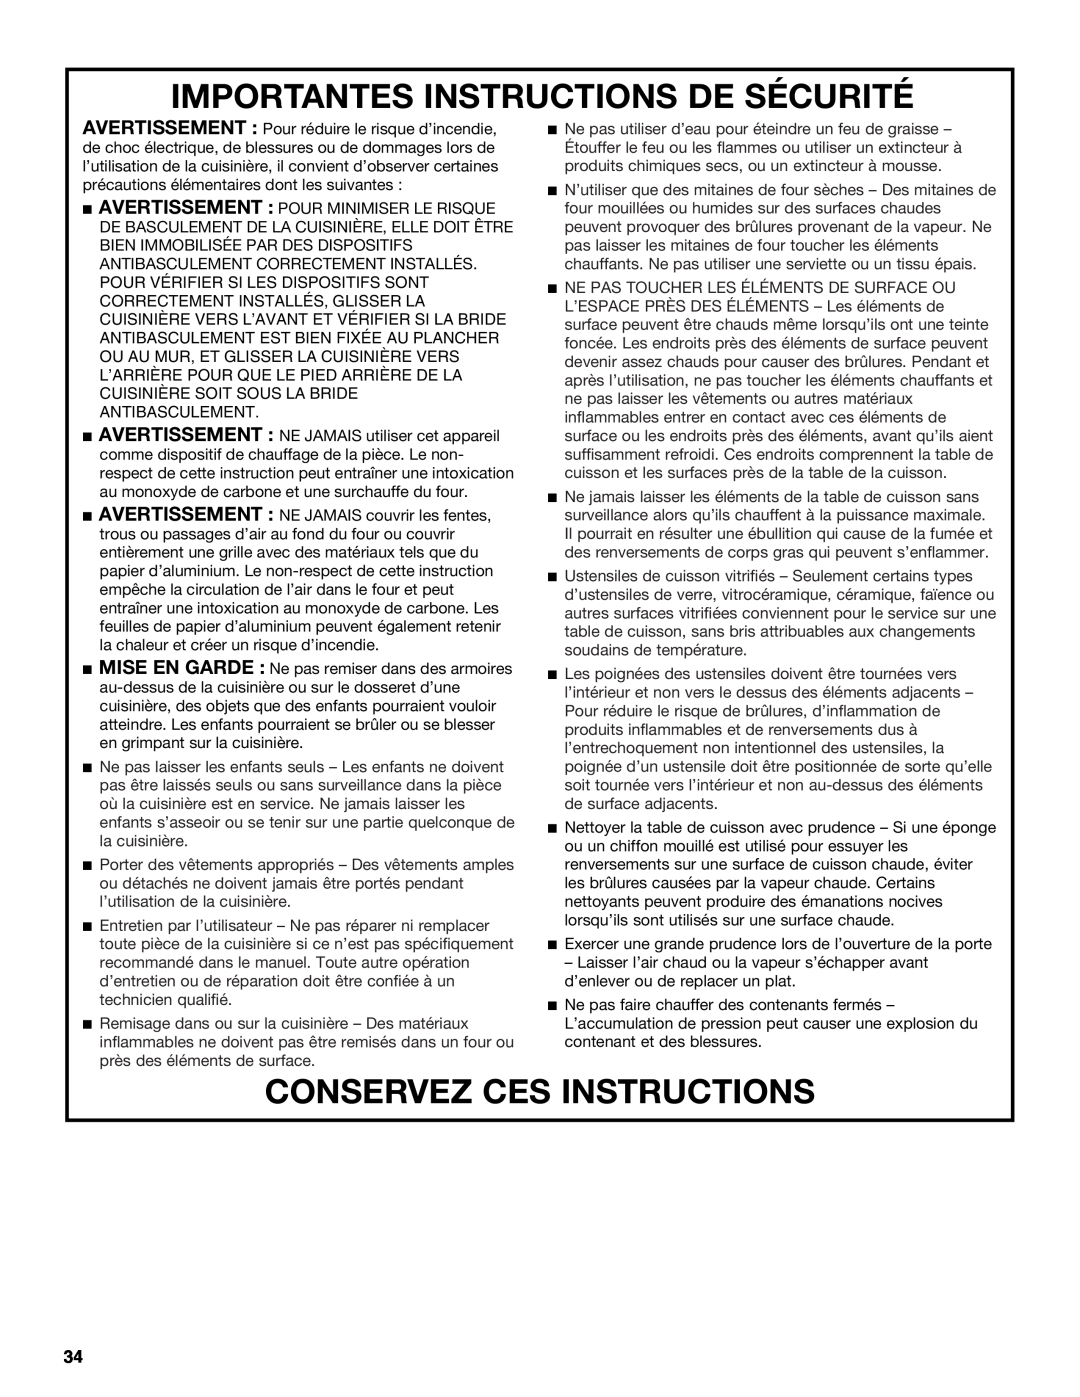 Jenn-Air JDS9865 manual Importantes Instructions De Sécurité, Conservez Ces Instructions 